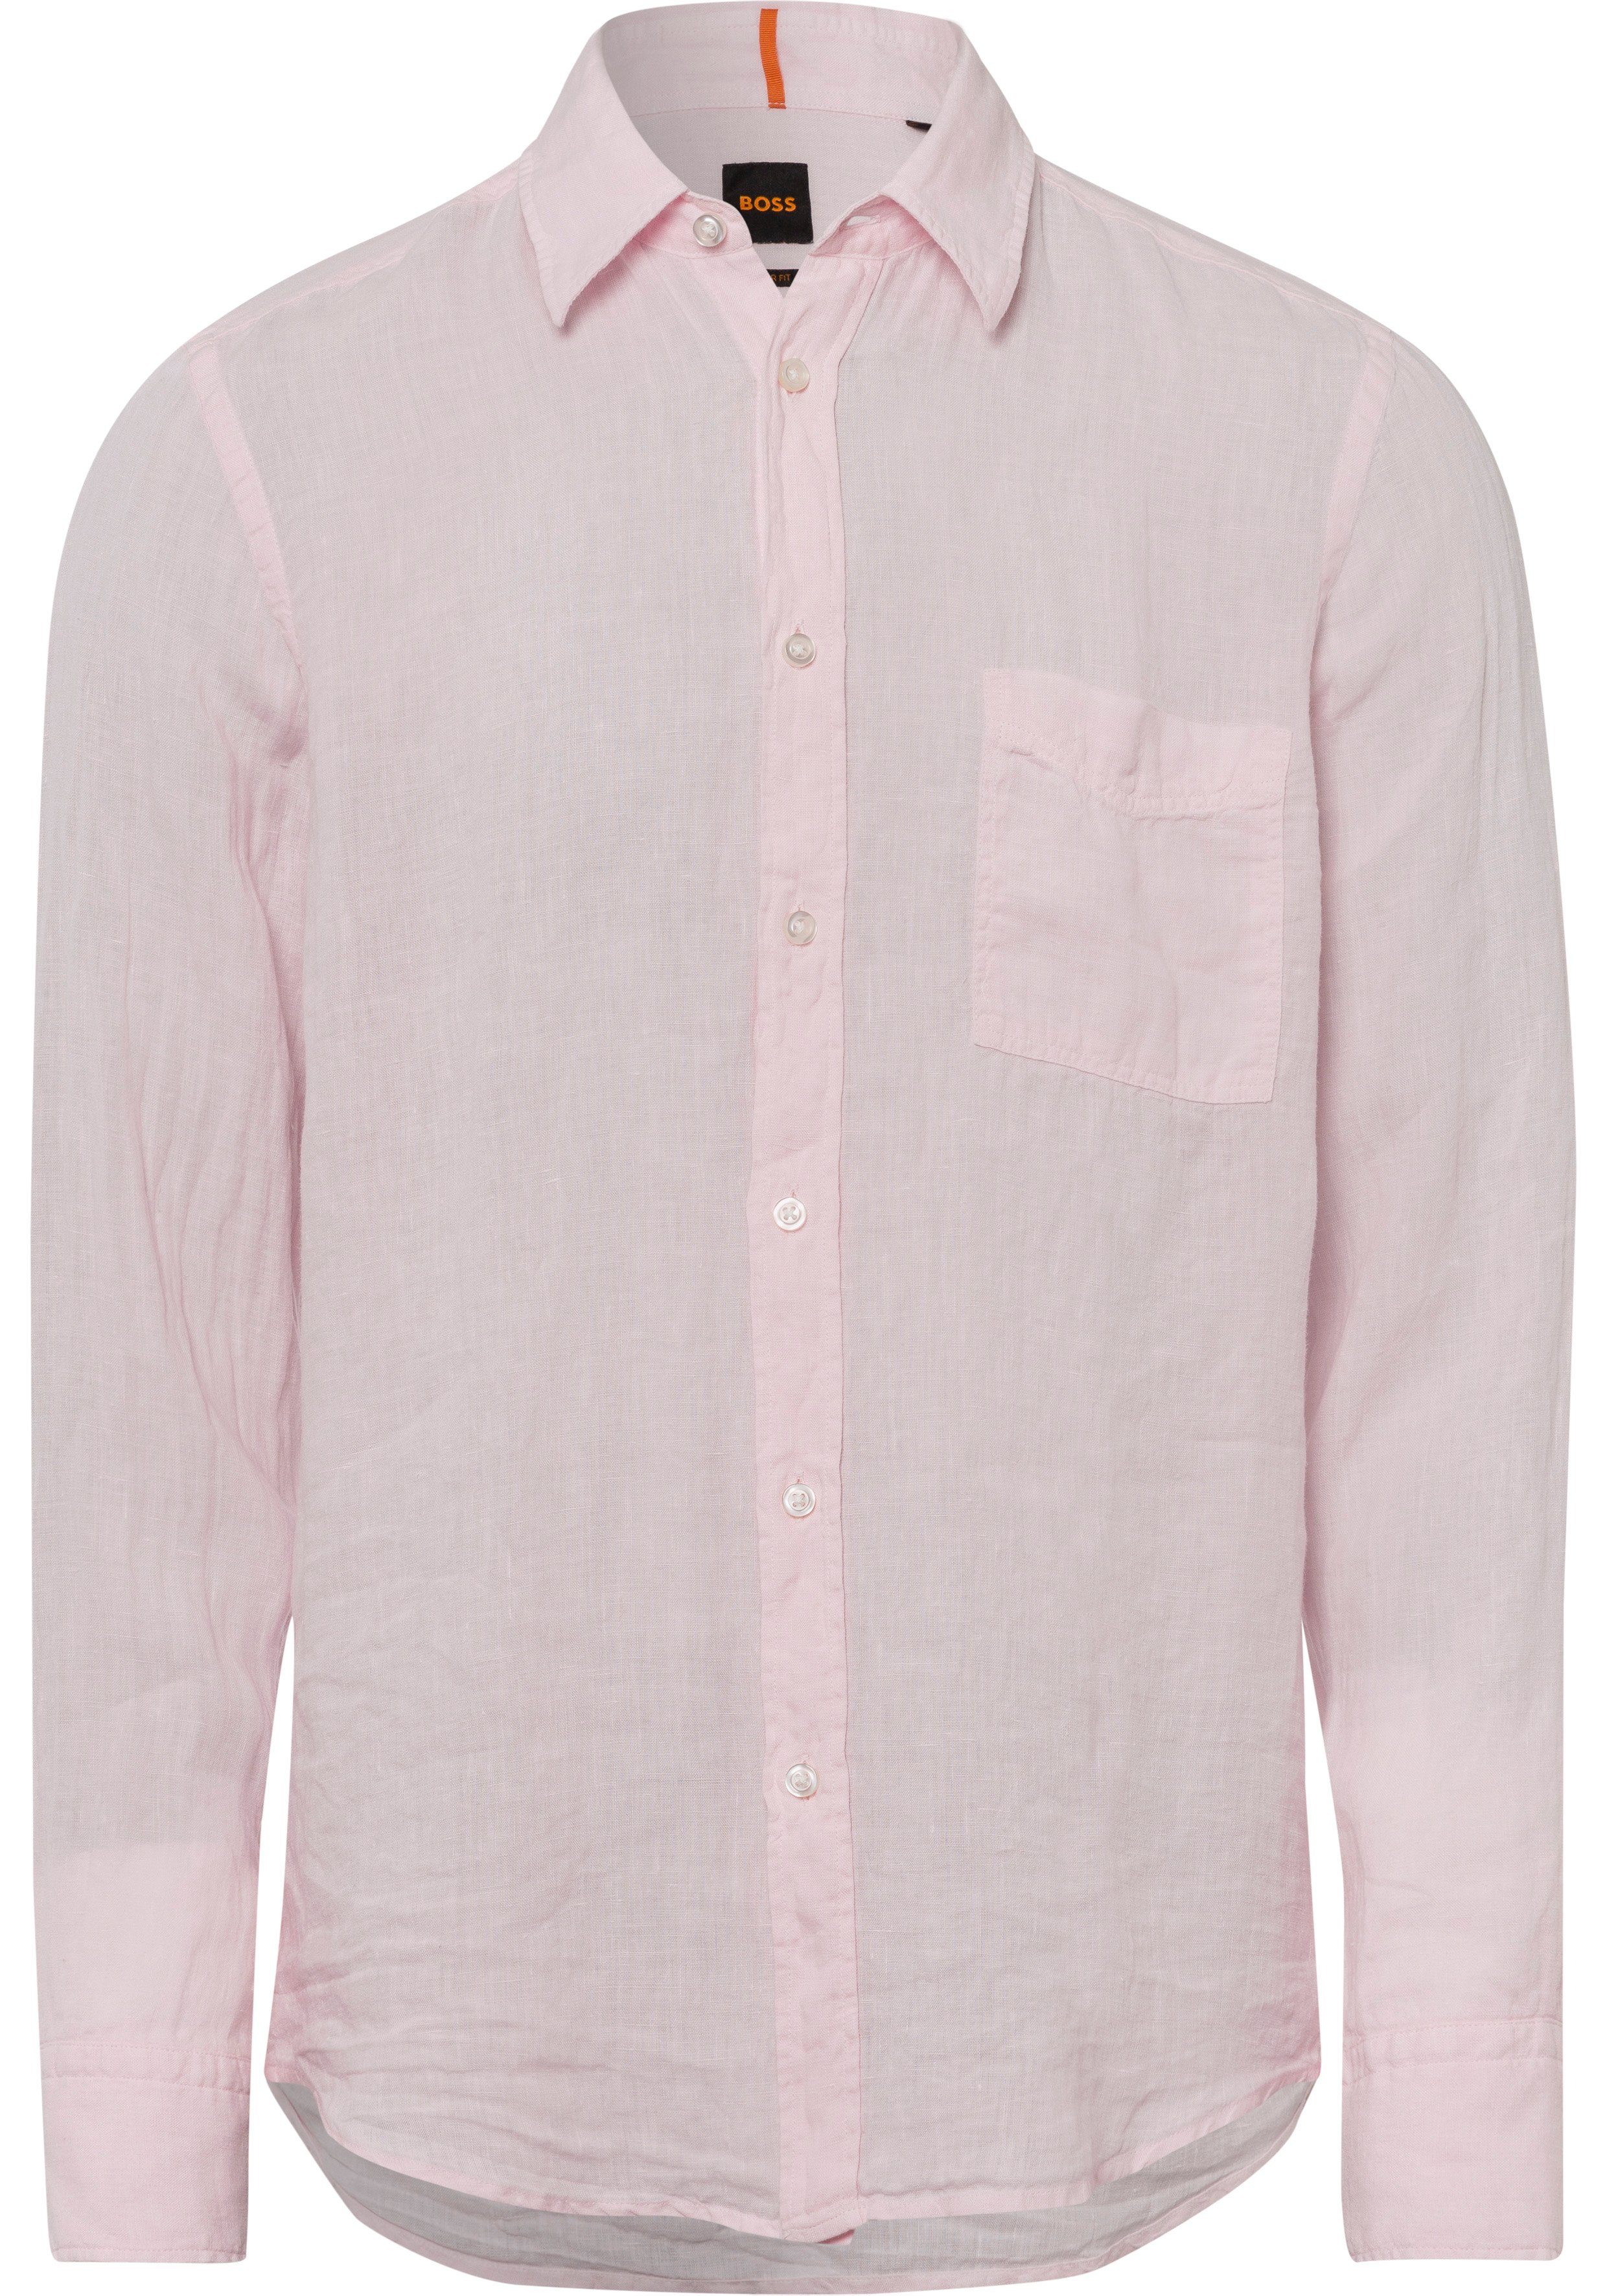 BOSS-Kontrastdetails ORANGE Langarmshirt BOSS mit Pink 682 Light/Pastel